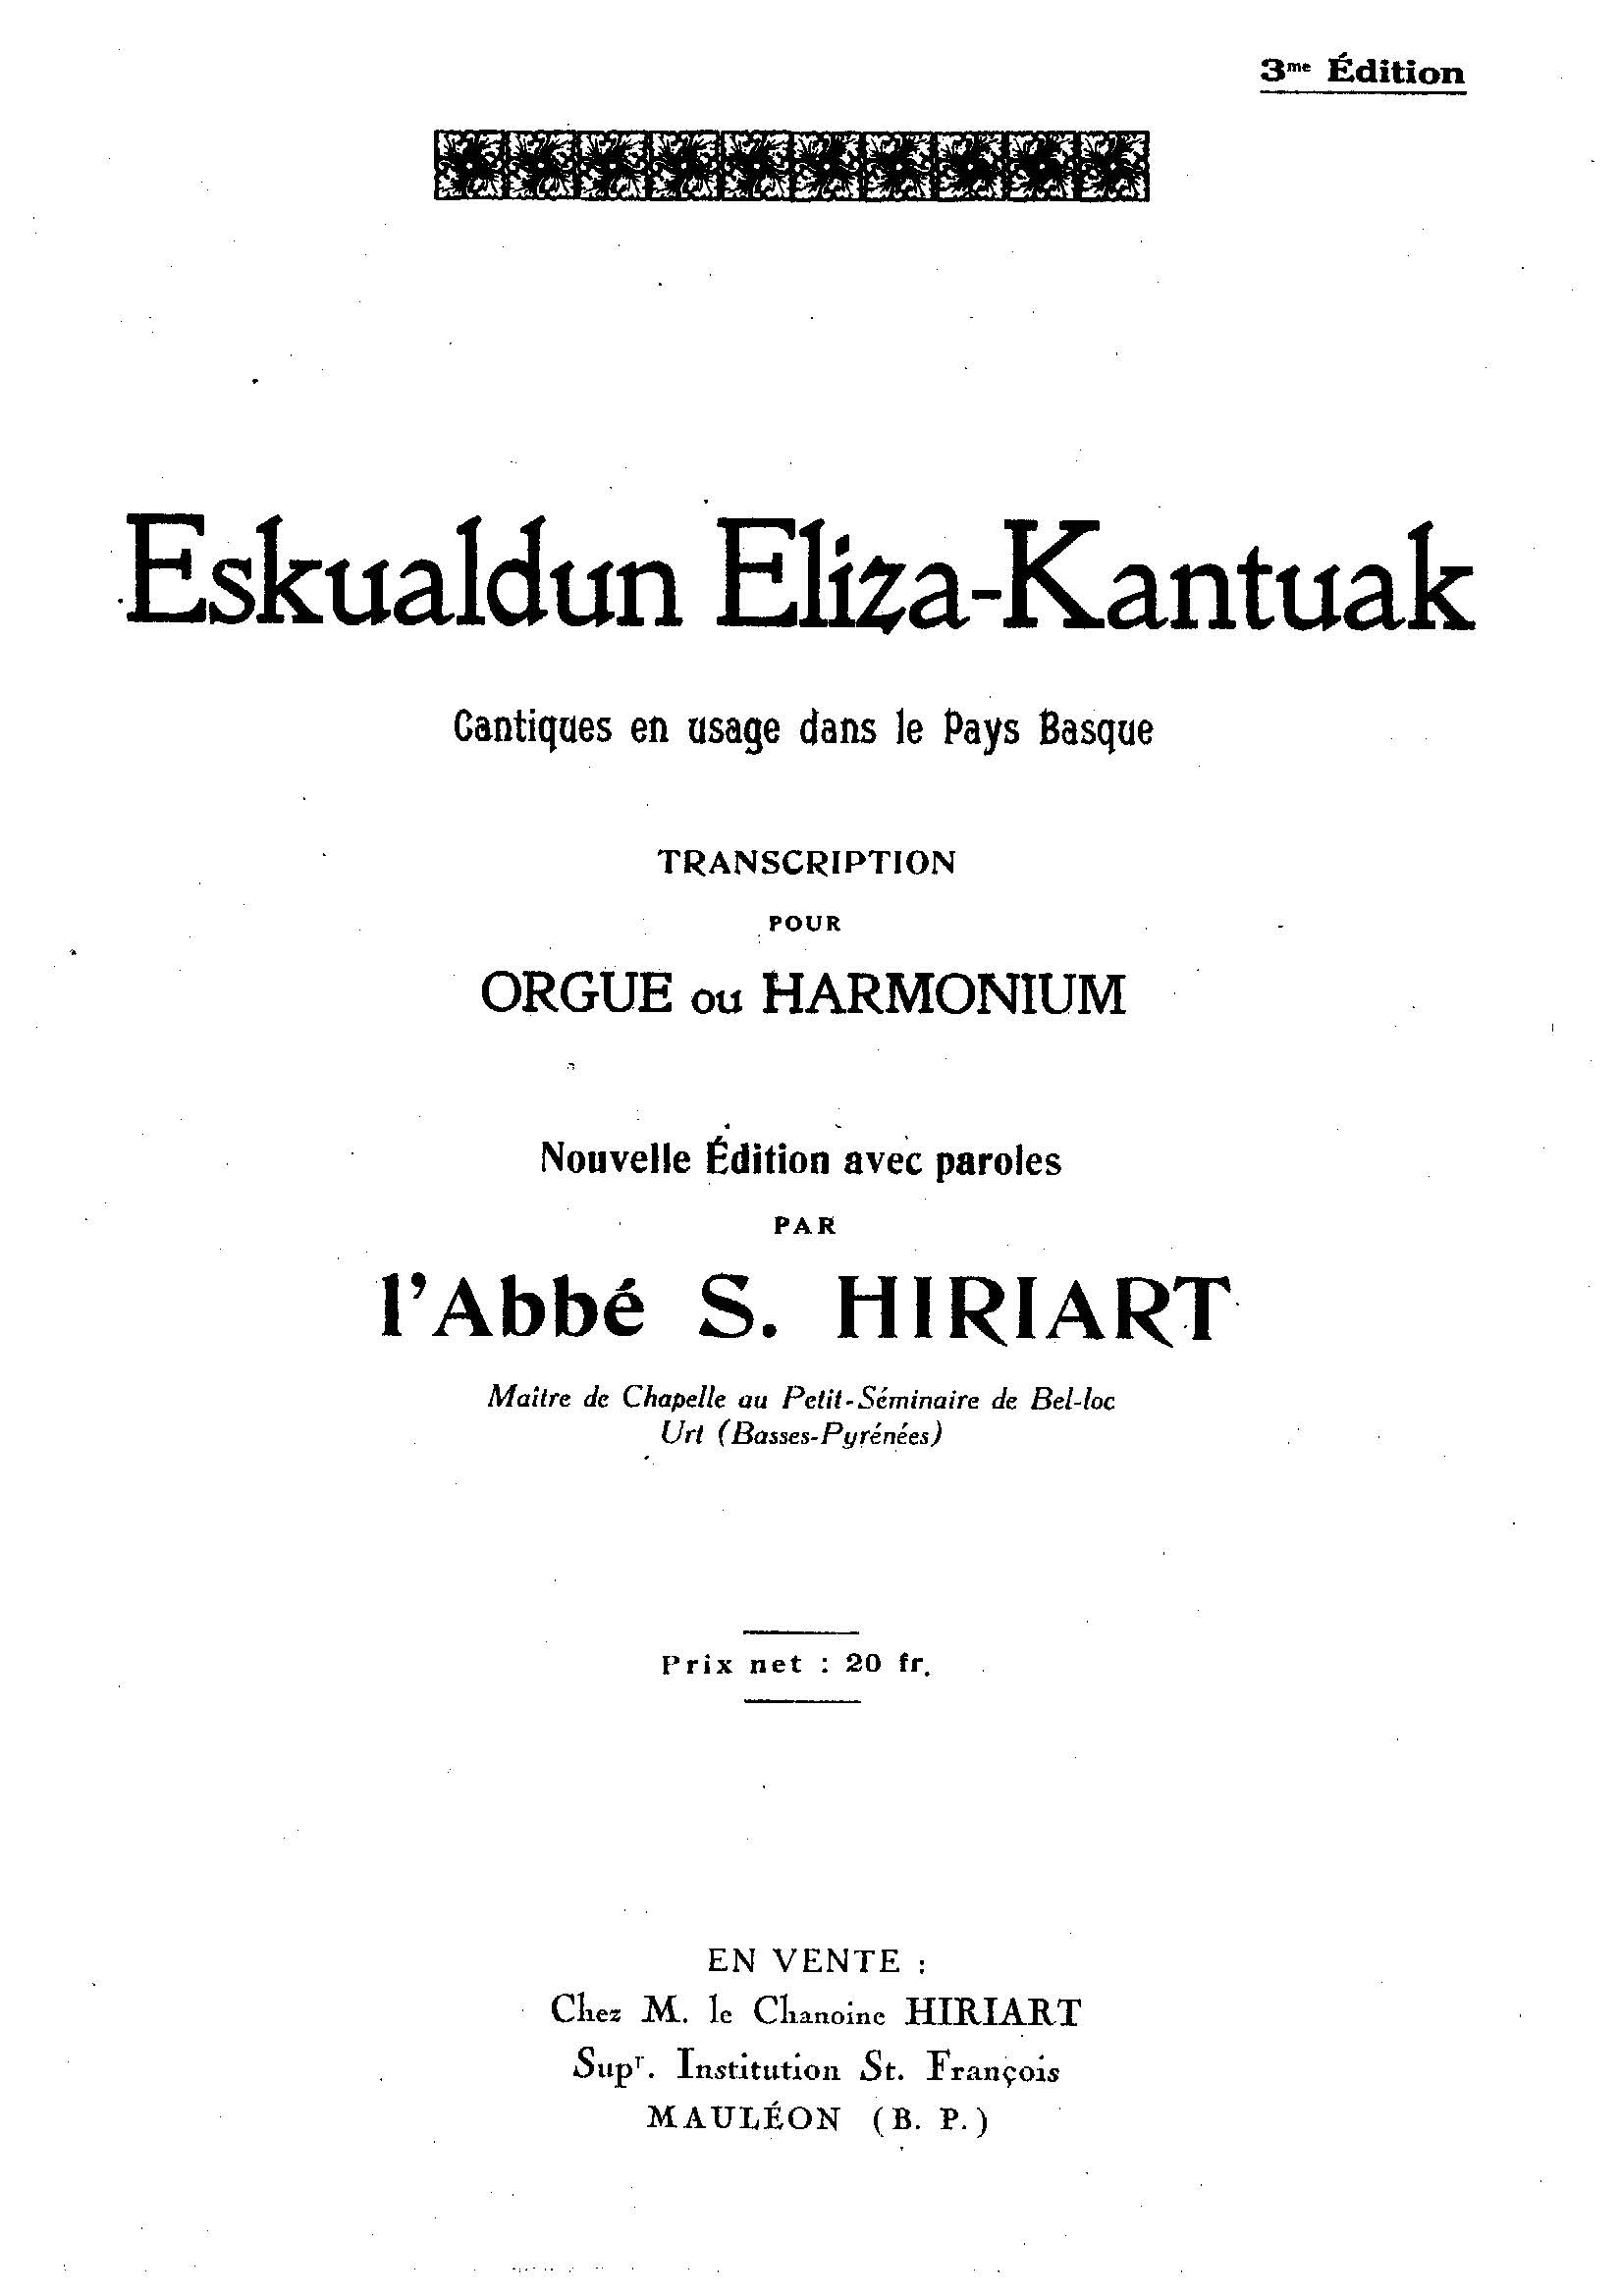 Illustration - Eskualdun Eliza-Kantuak – Sebastien Hiriart 1906 Organoa edo harmonioa